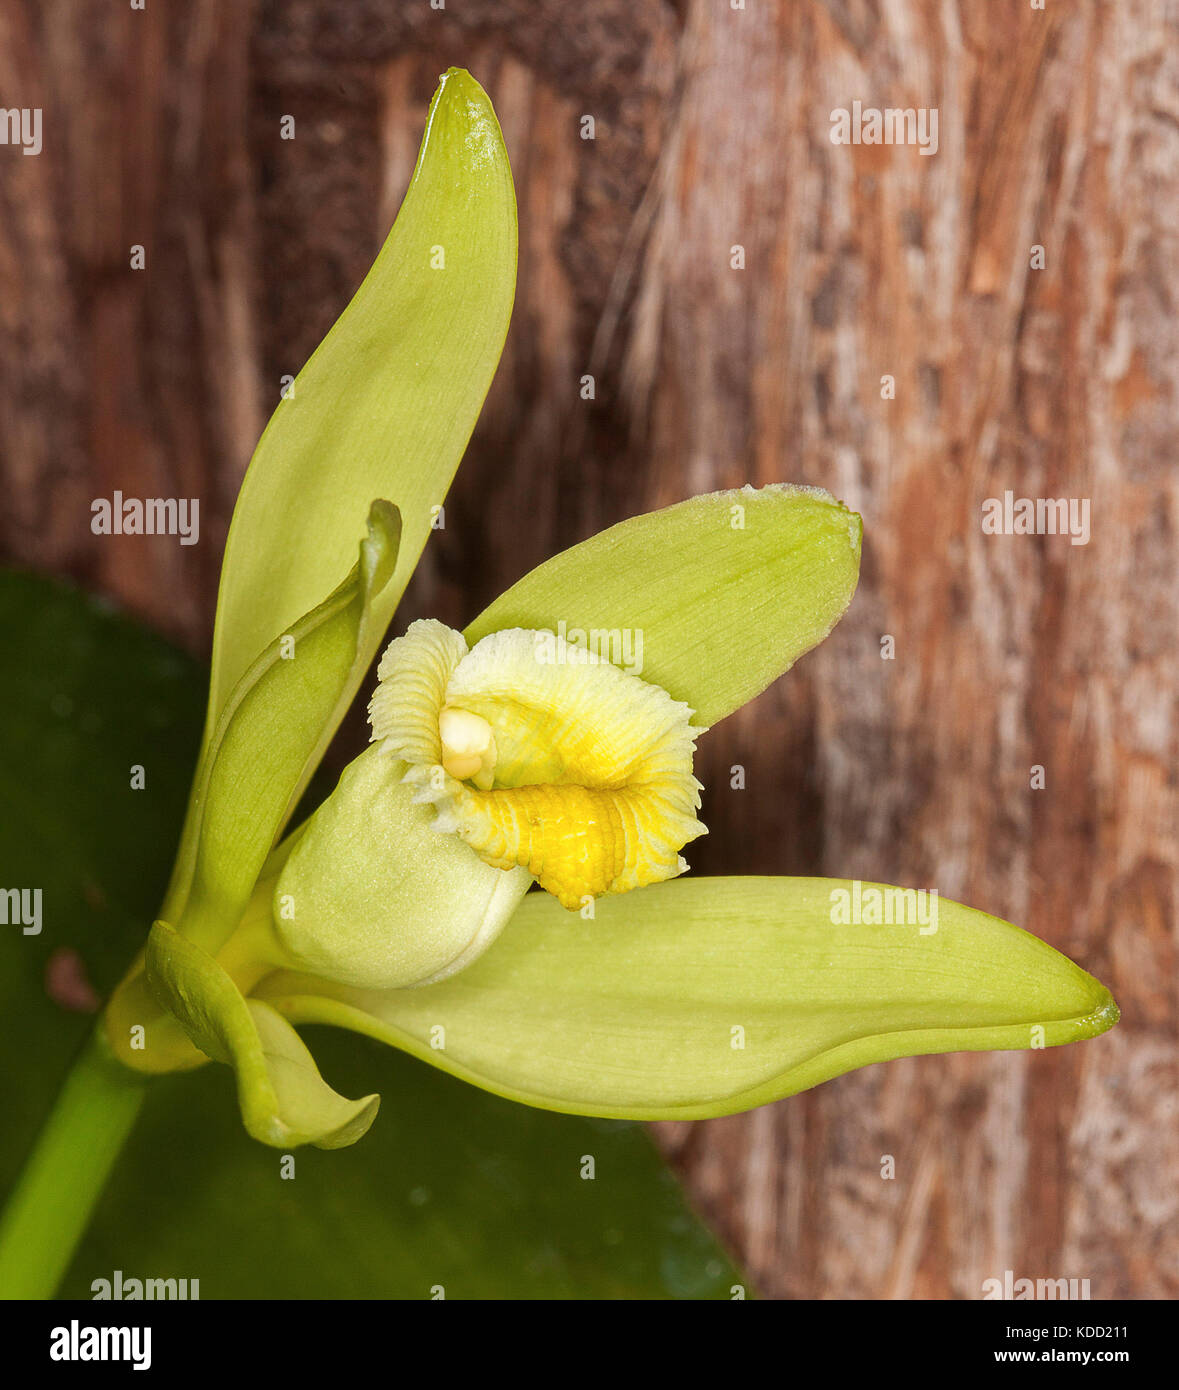 Bella giallo pallido / verde lime fiore di vaniglia orchid, Vanilla planifolia, una pianta rampicante, contro il marrone scuro corteccia del tronco di albero Foto Stock